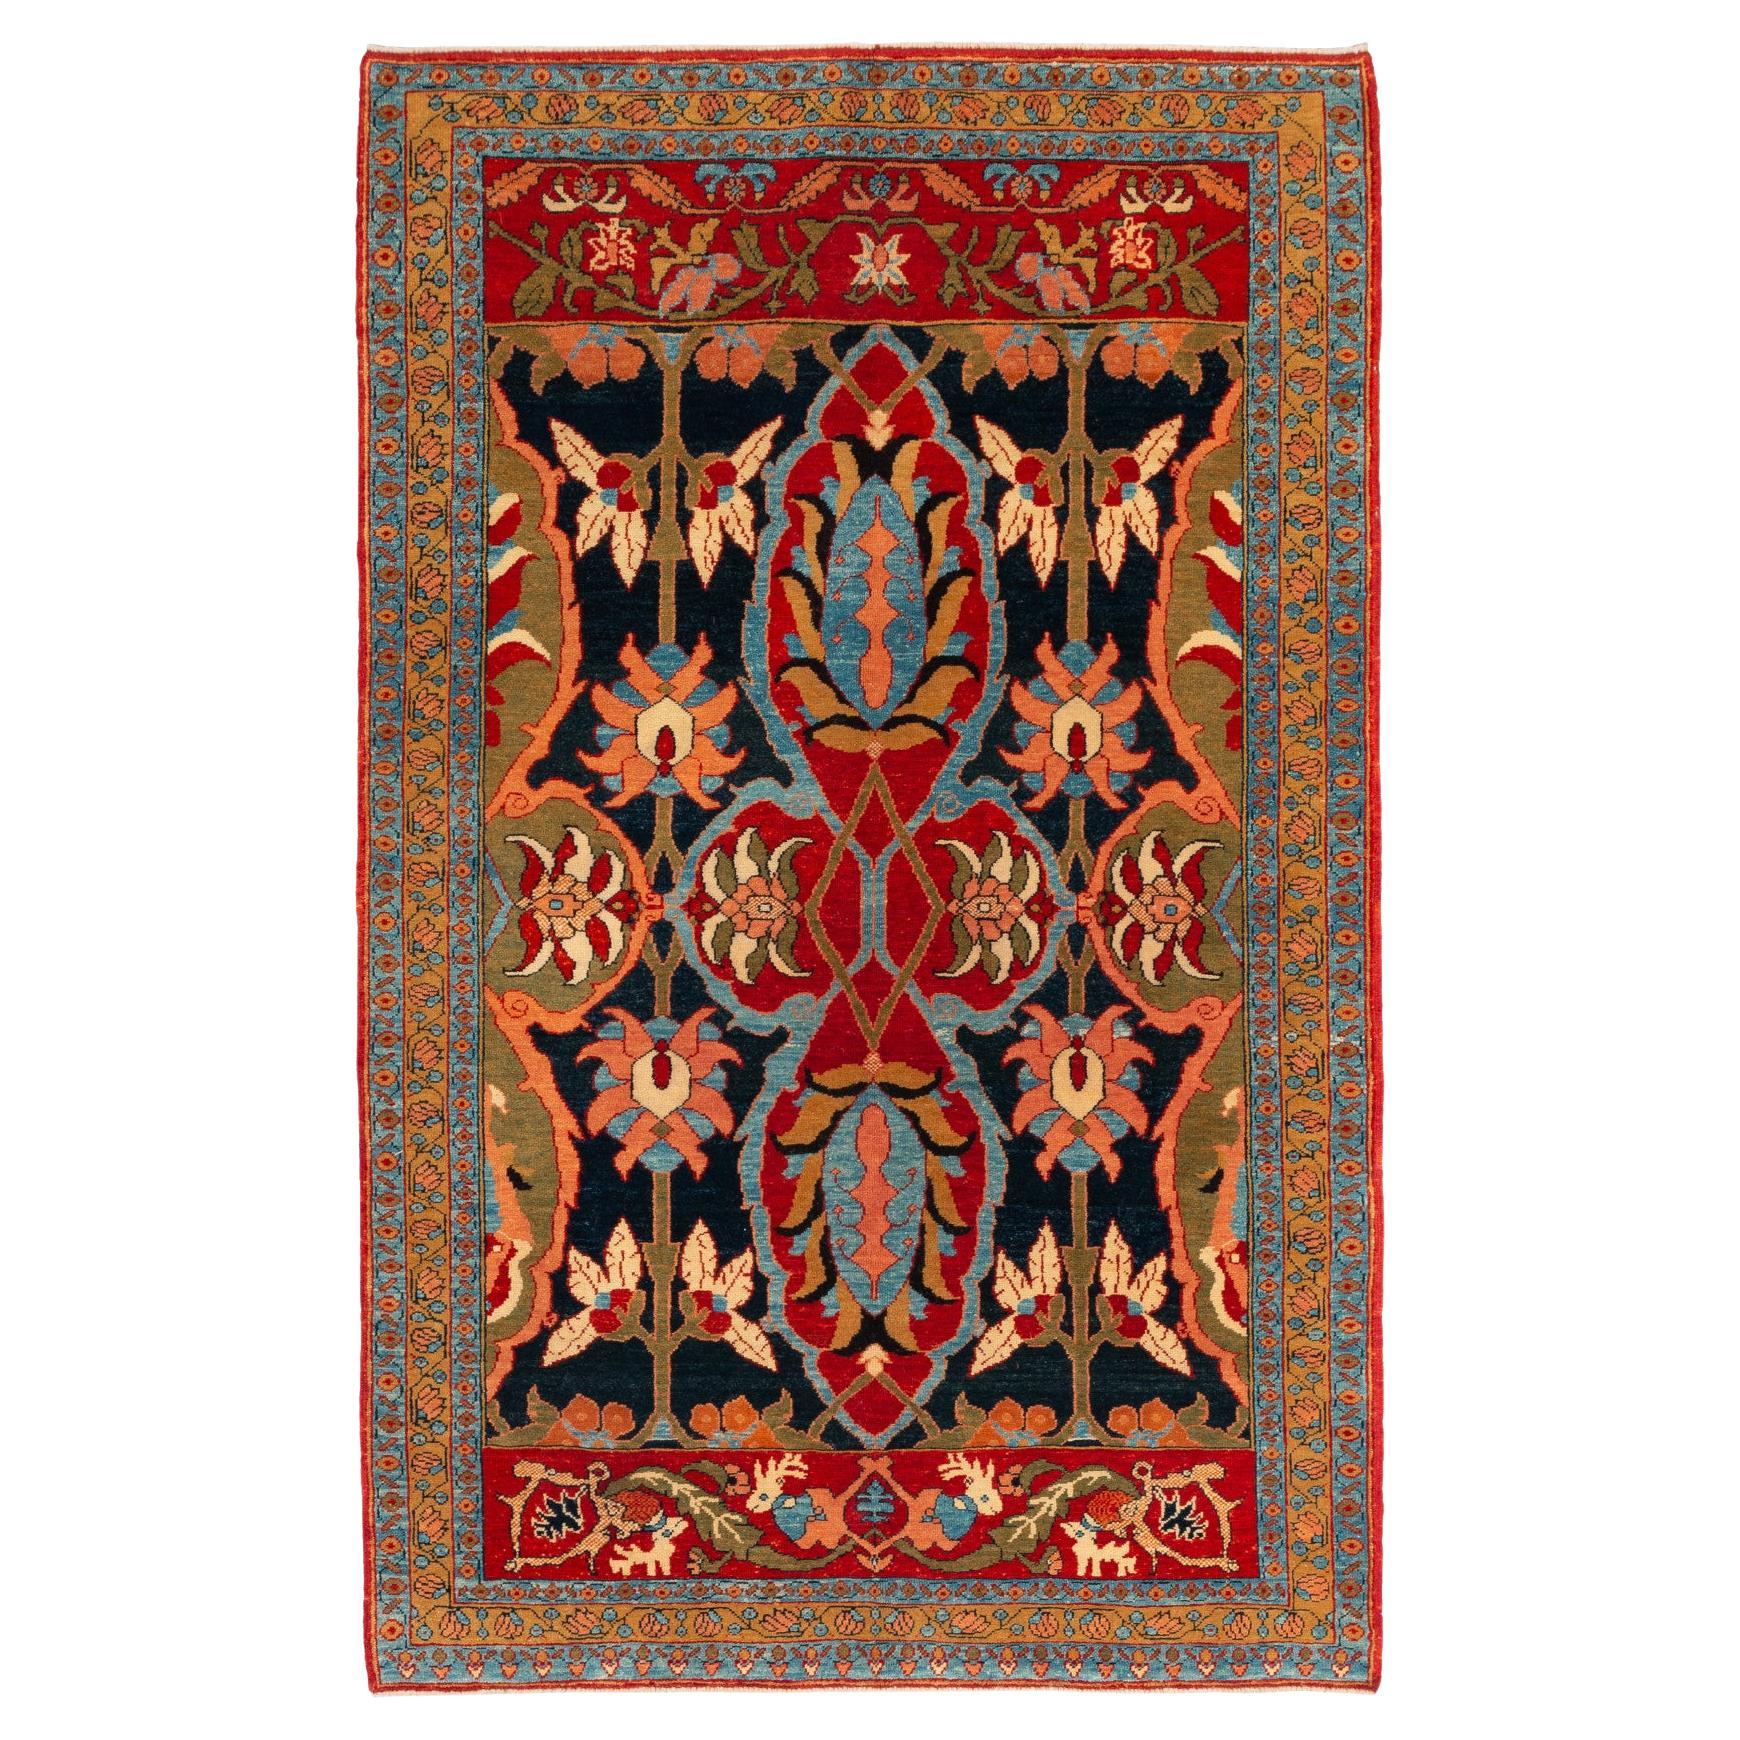 Ararat Rugs Gerous Bidjar Wagireh Rug Persian Revival Carpet Natural Dyed For Sale